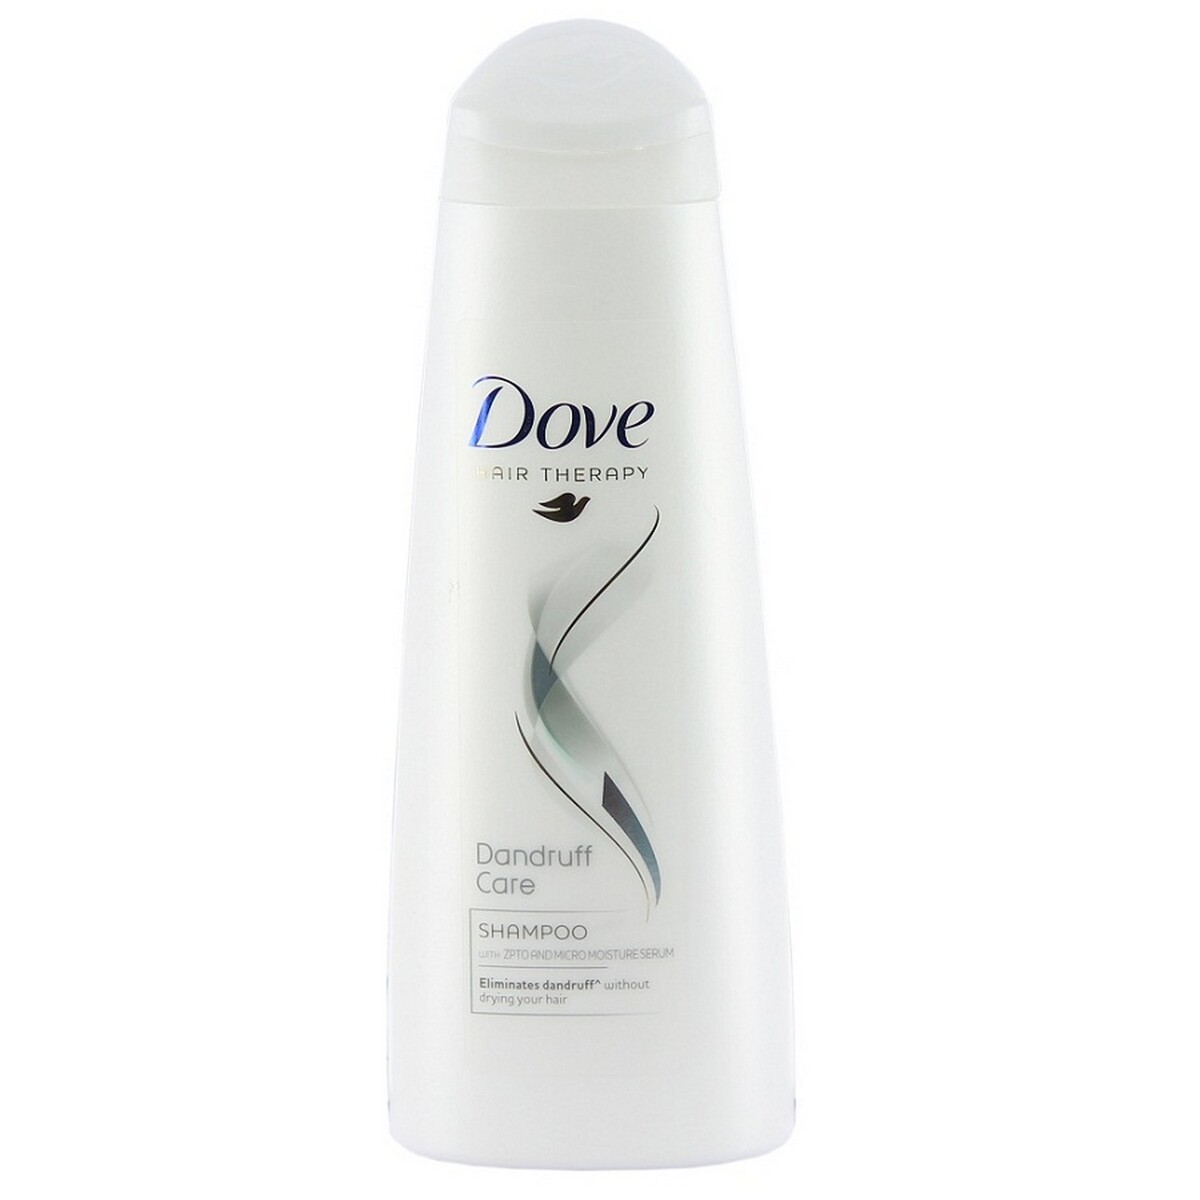 Dove Shampoo Dandruff Care 340ml